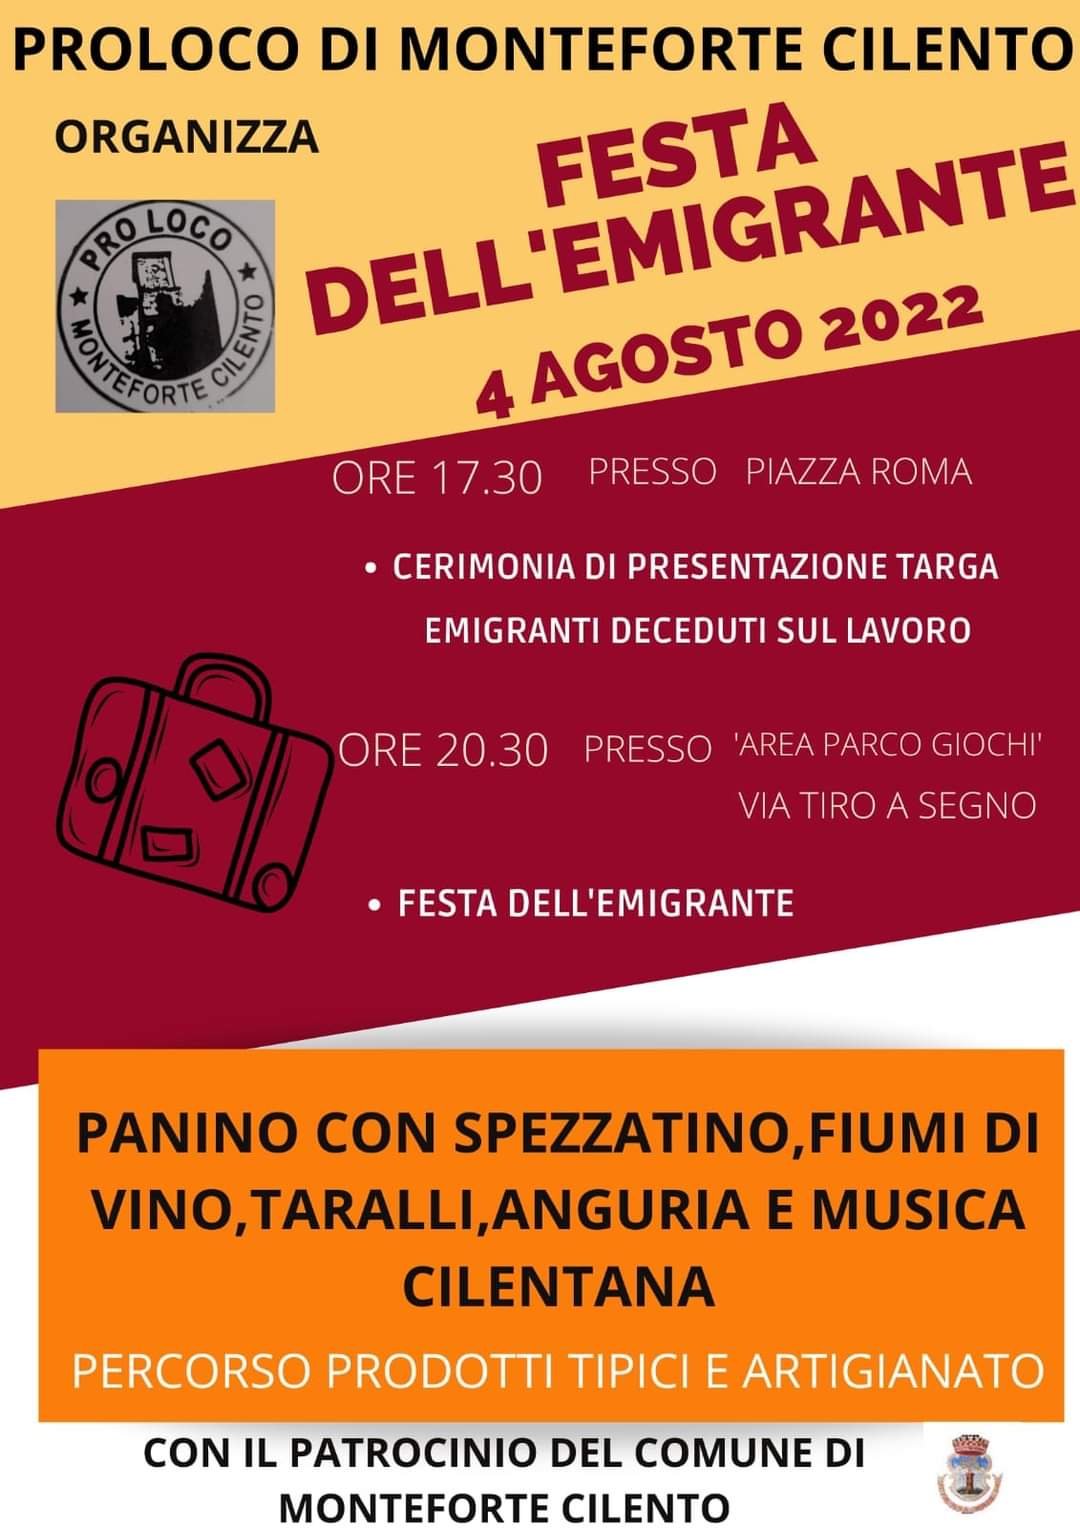 Festa-dellemigrante-2022-Monteforte-Cilento-locandina-programma